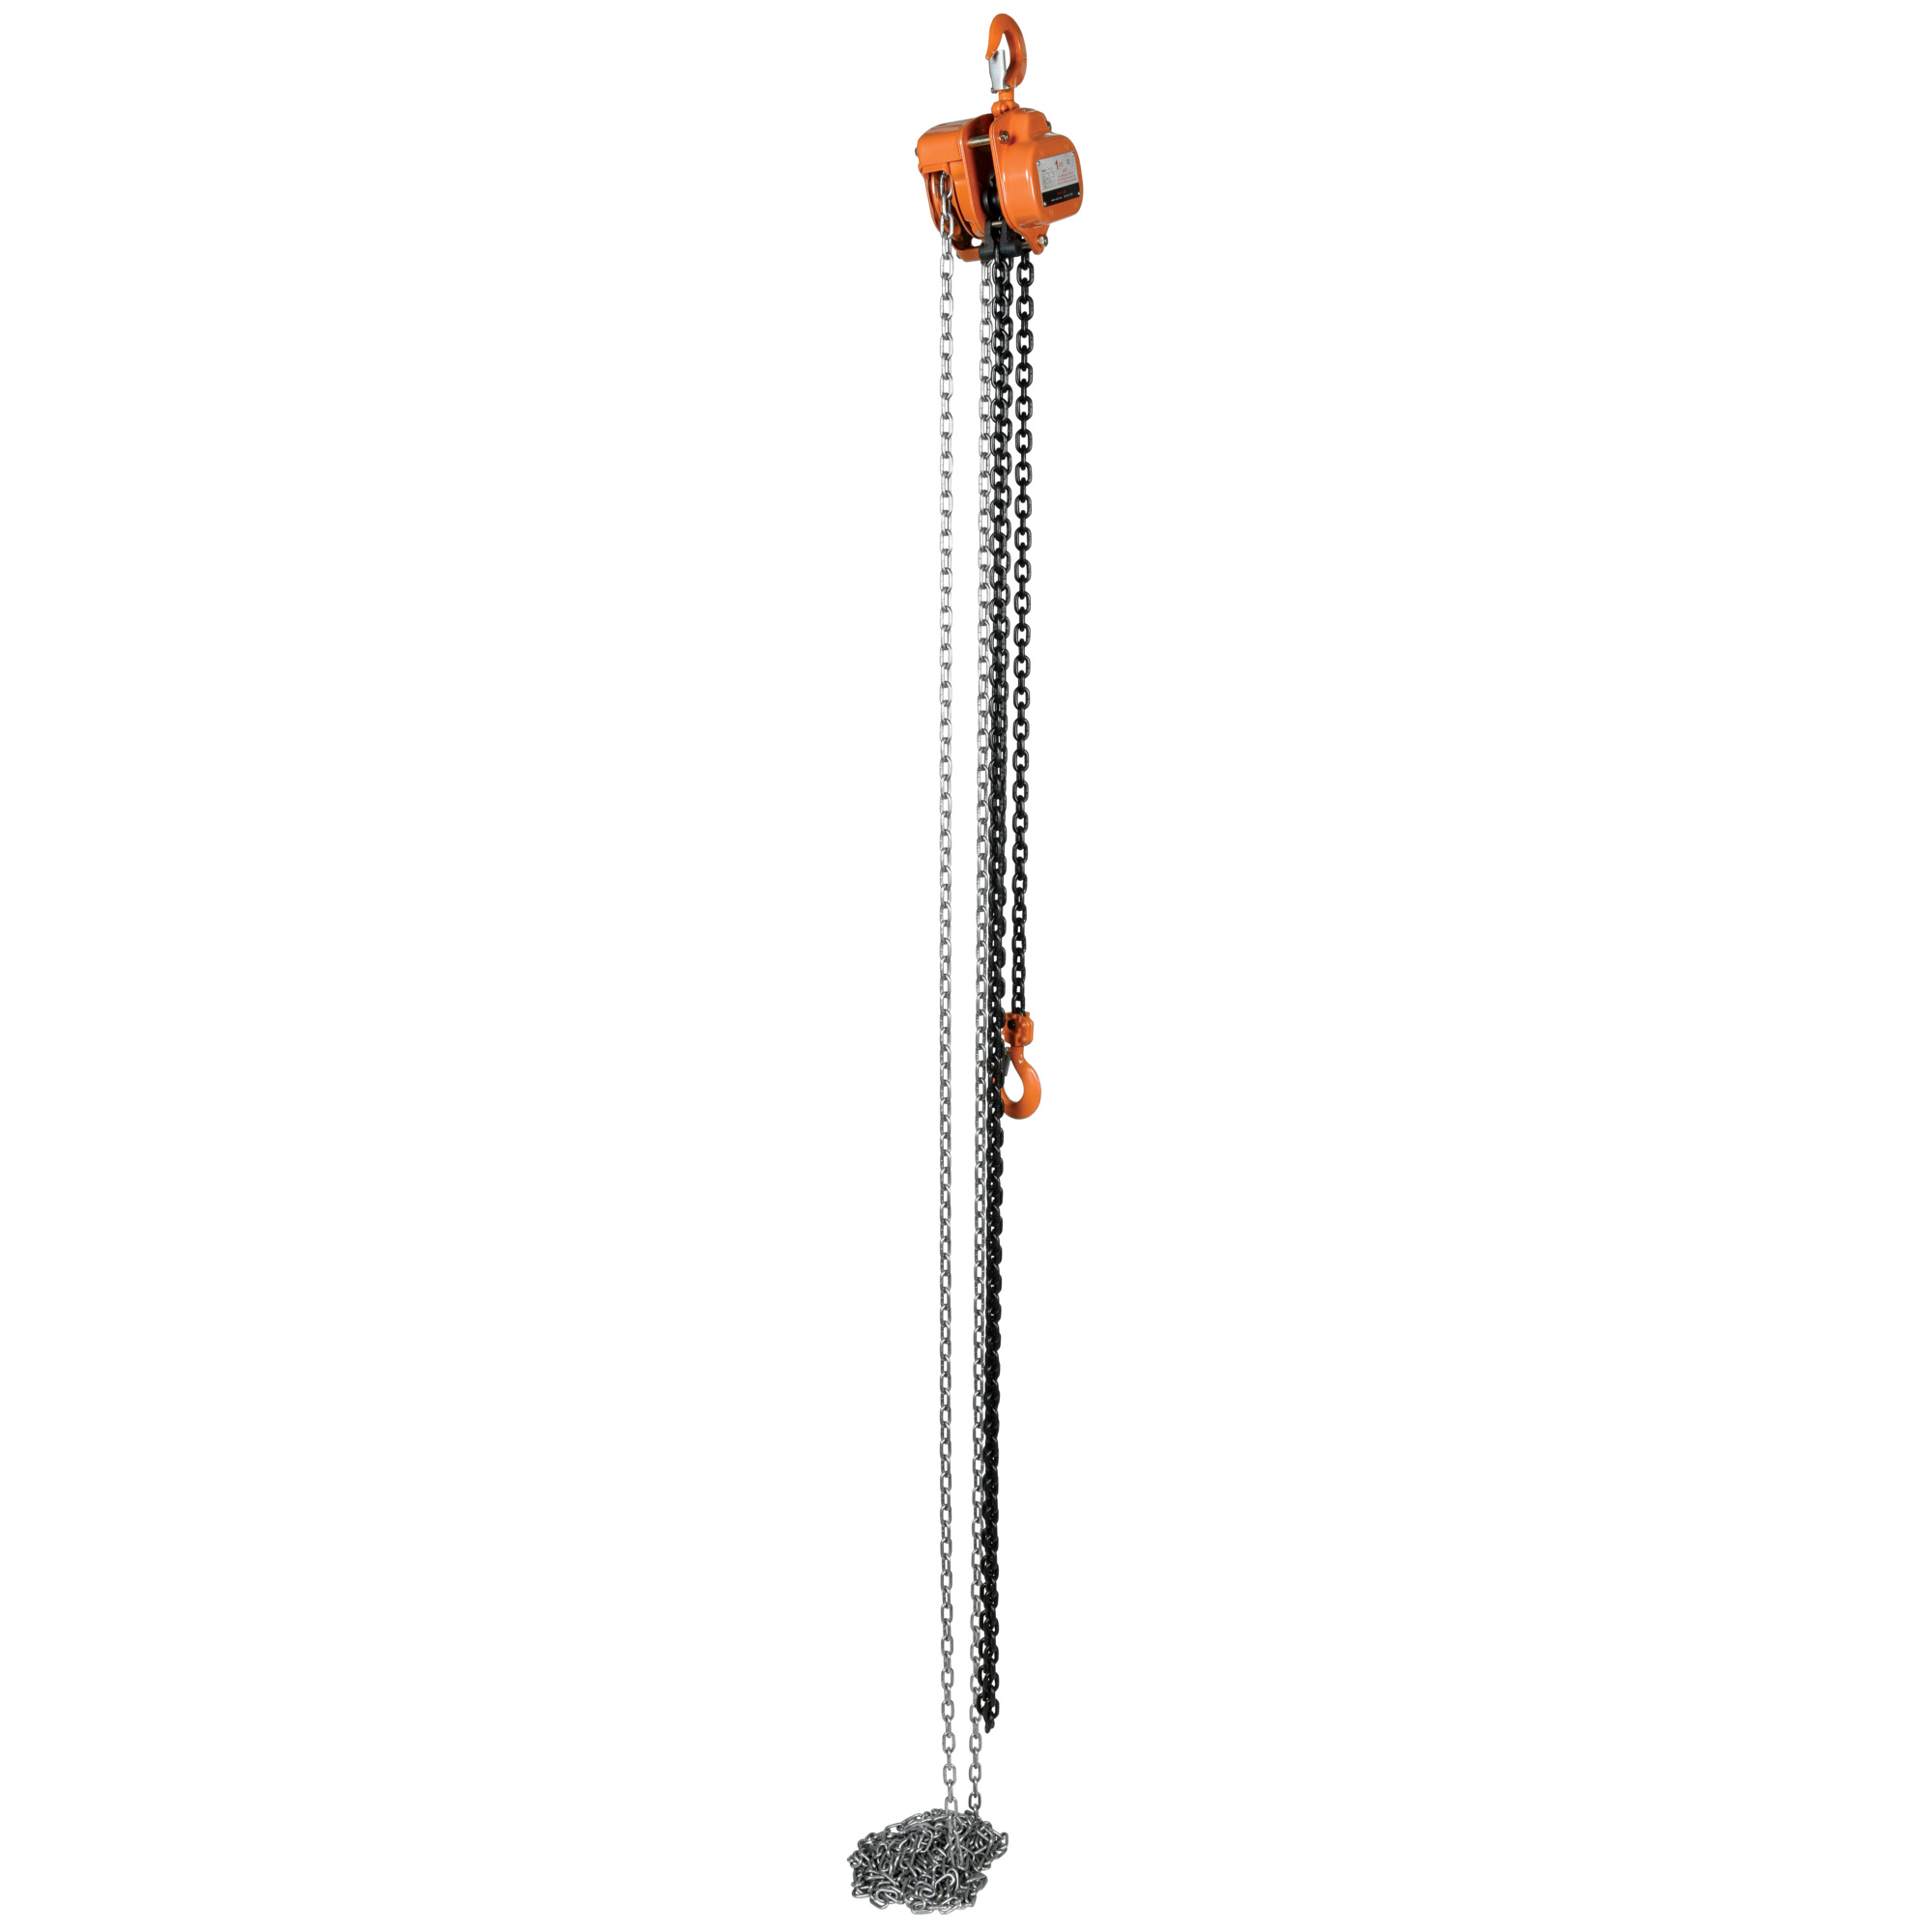 Vestil, Professional Hand Chain Hoist, Capacity 2000 lb, Lift Height 15 ft, Model PHCH-2-15